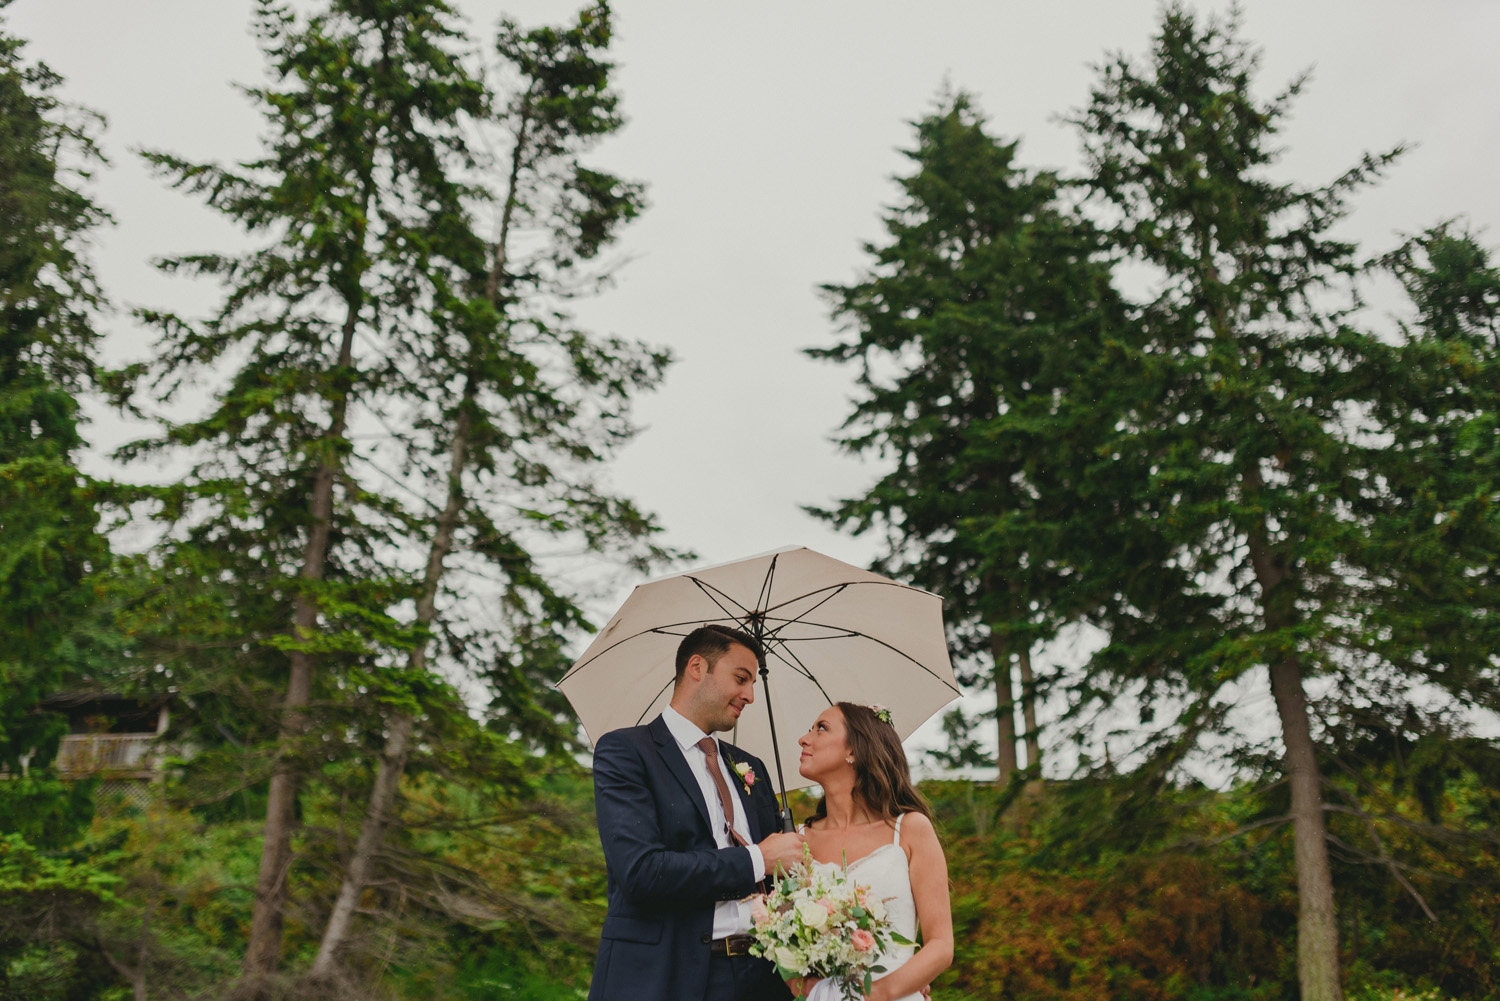 hornby island wedding in the rain